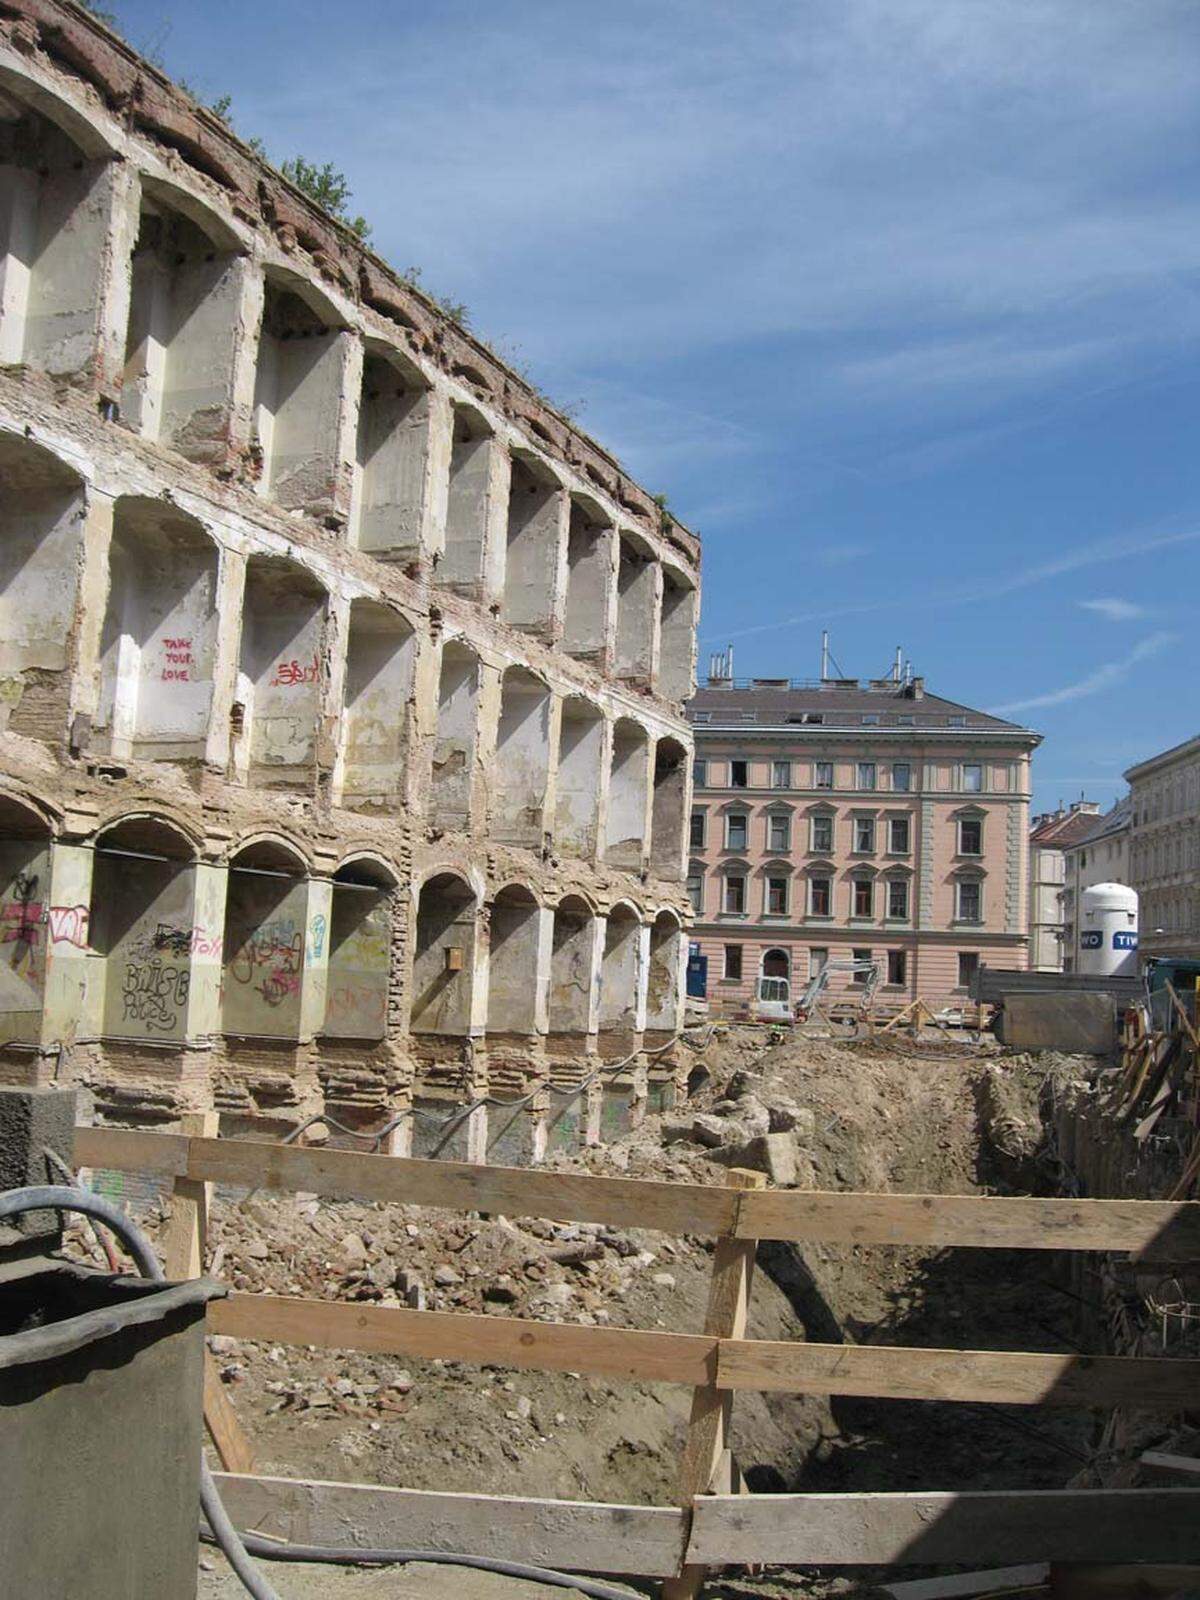 Weiter: Bilder von der Ruine und der Baustelle